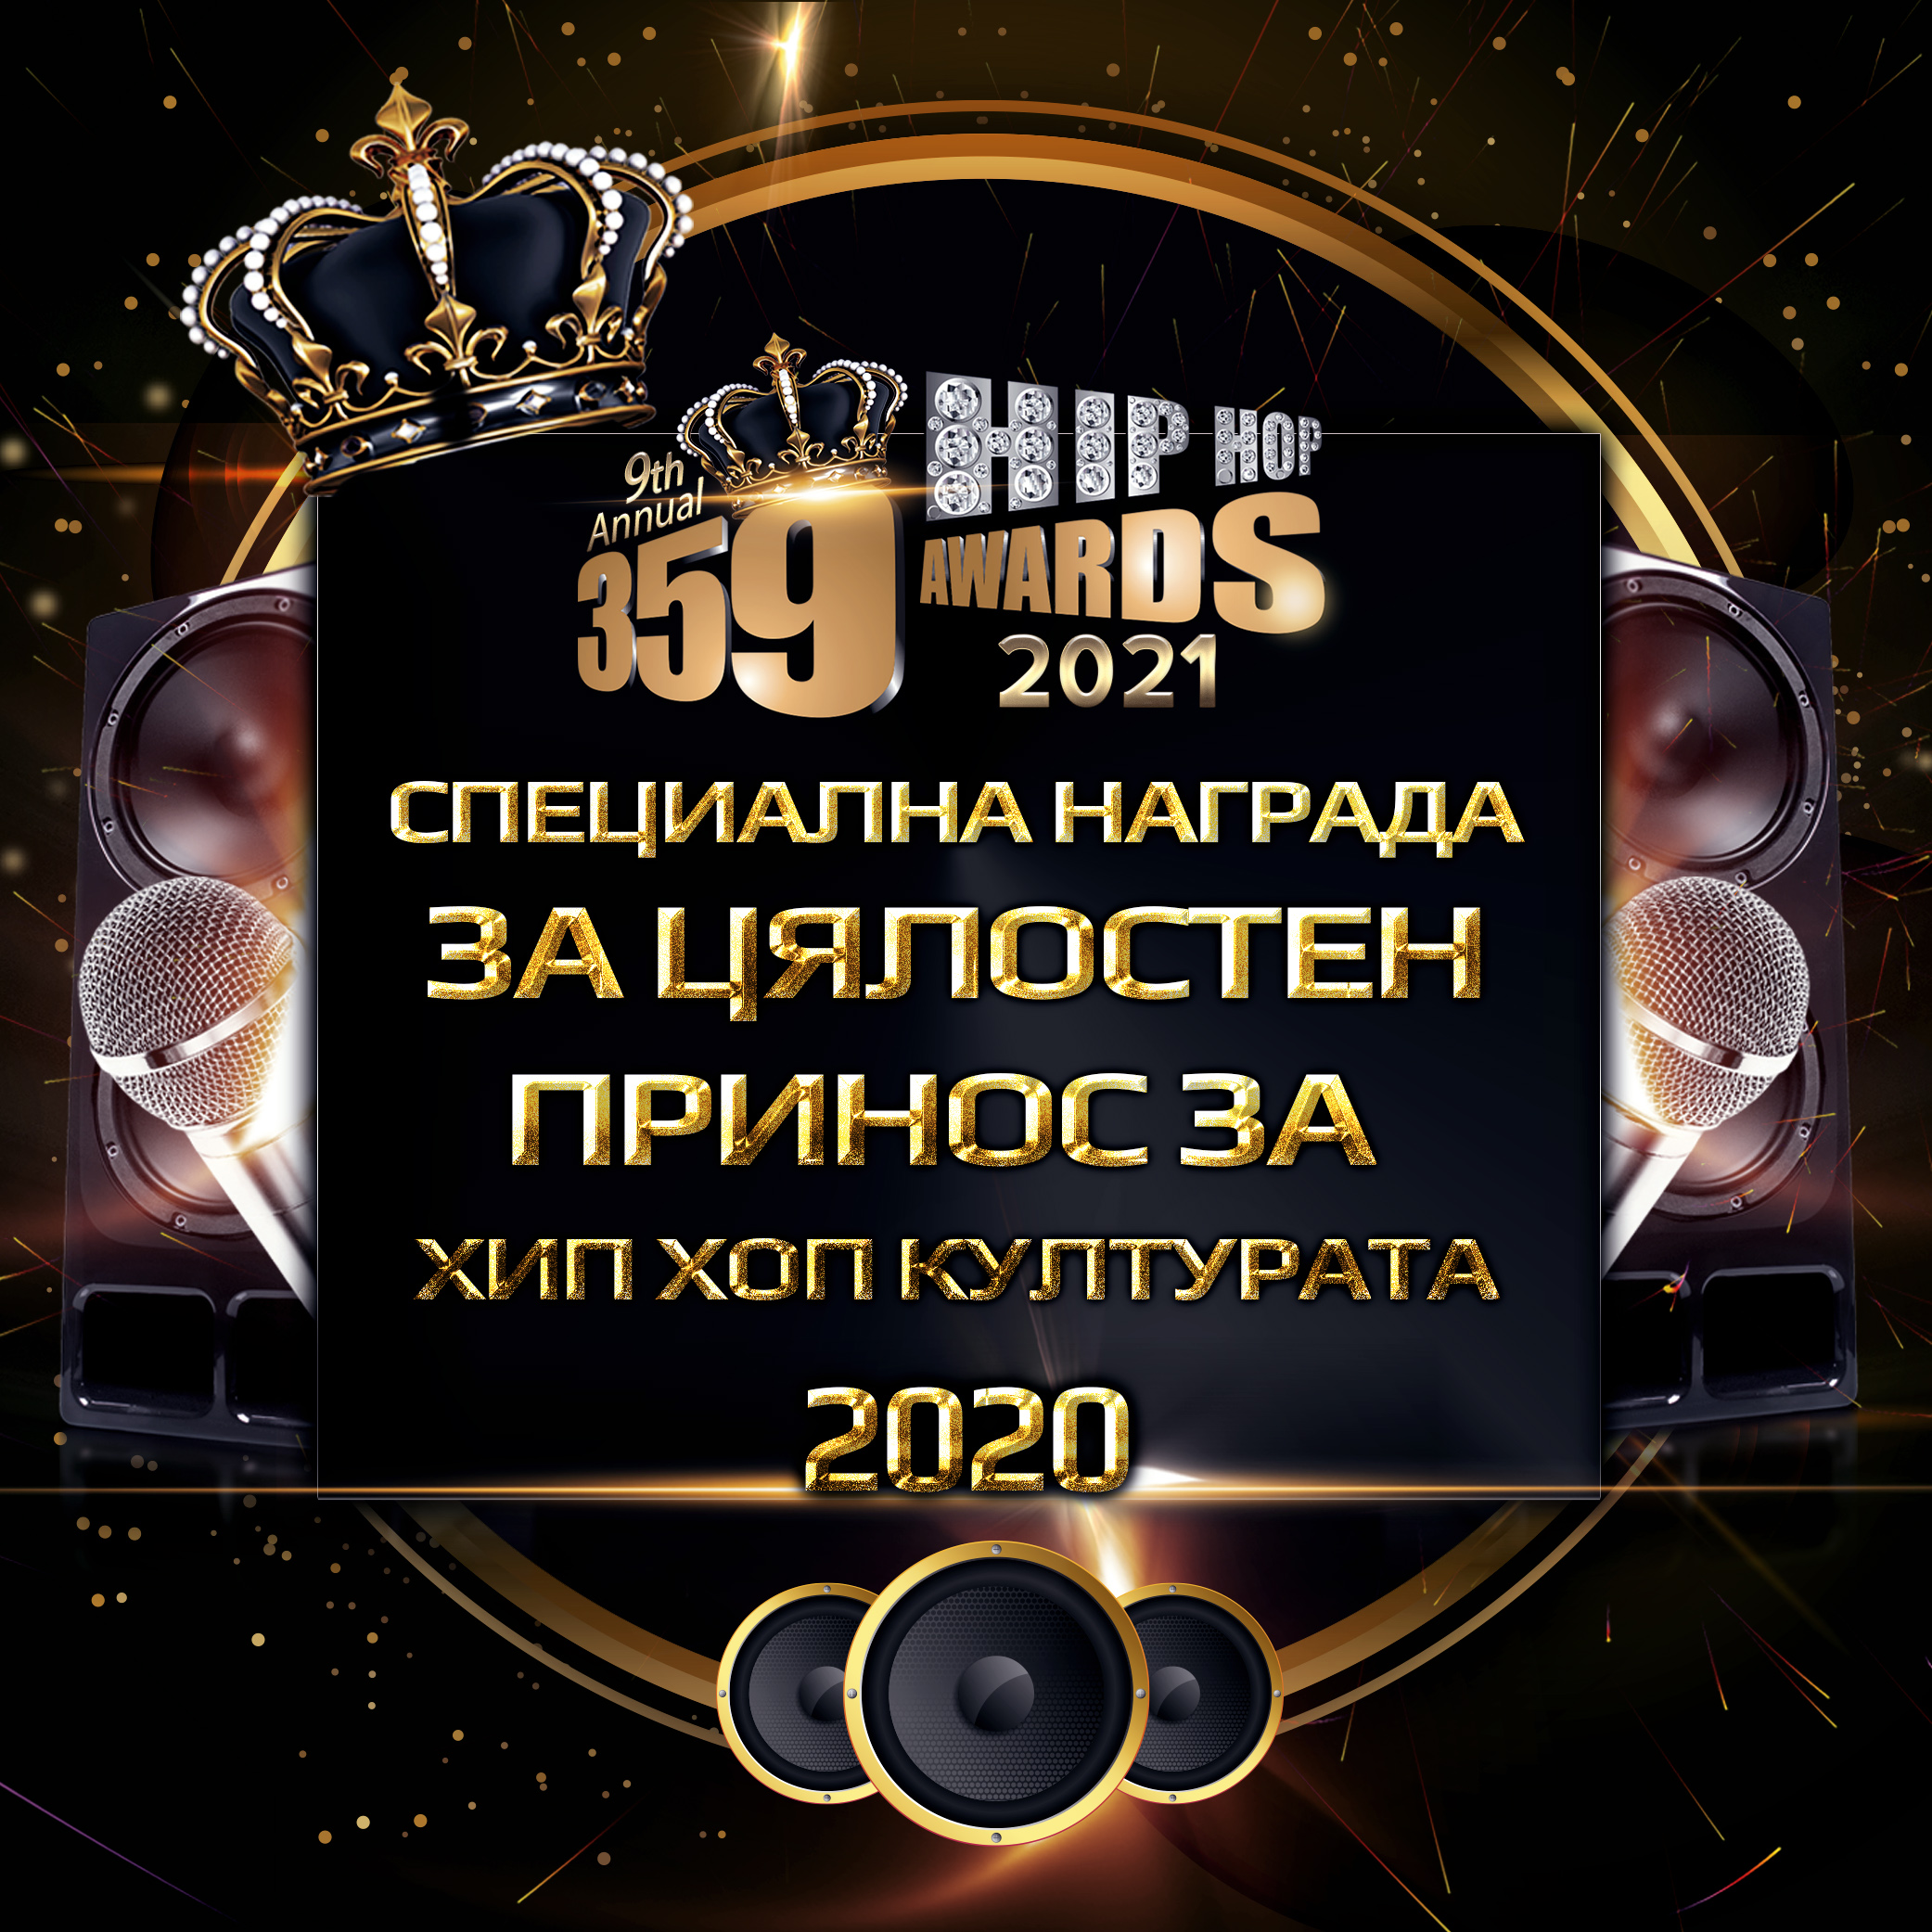 nominacii  359 awards 2021 specialna nagrada za cjalosten prinos za hip hop kulturata - Номинации